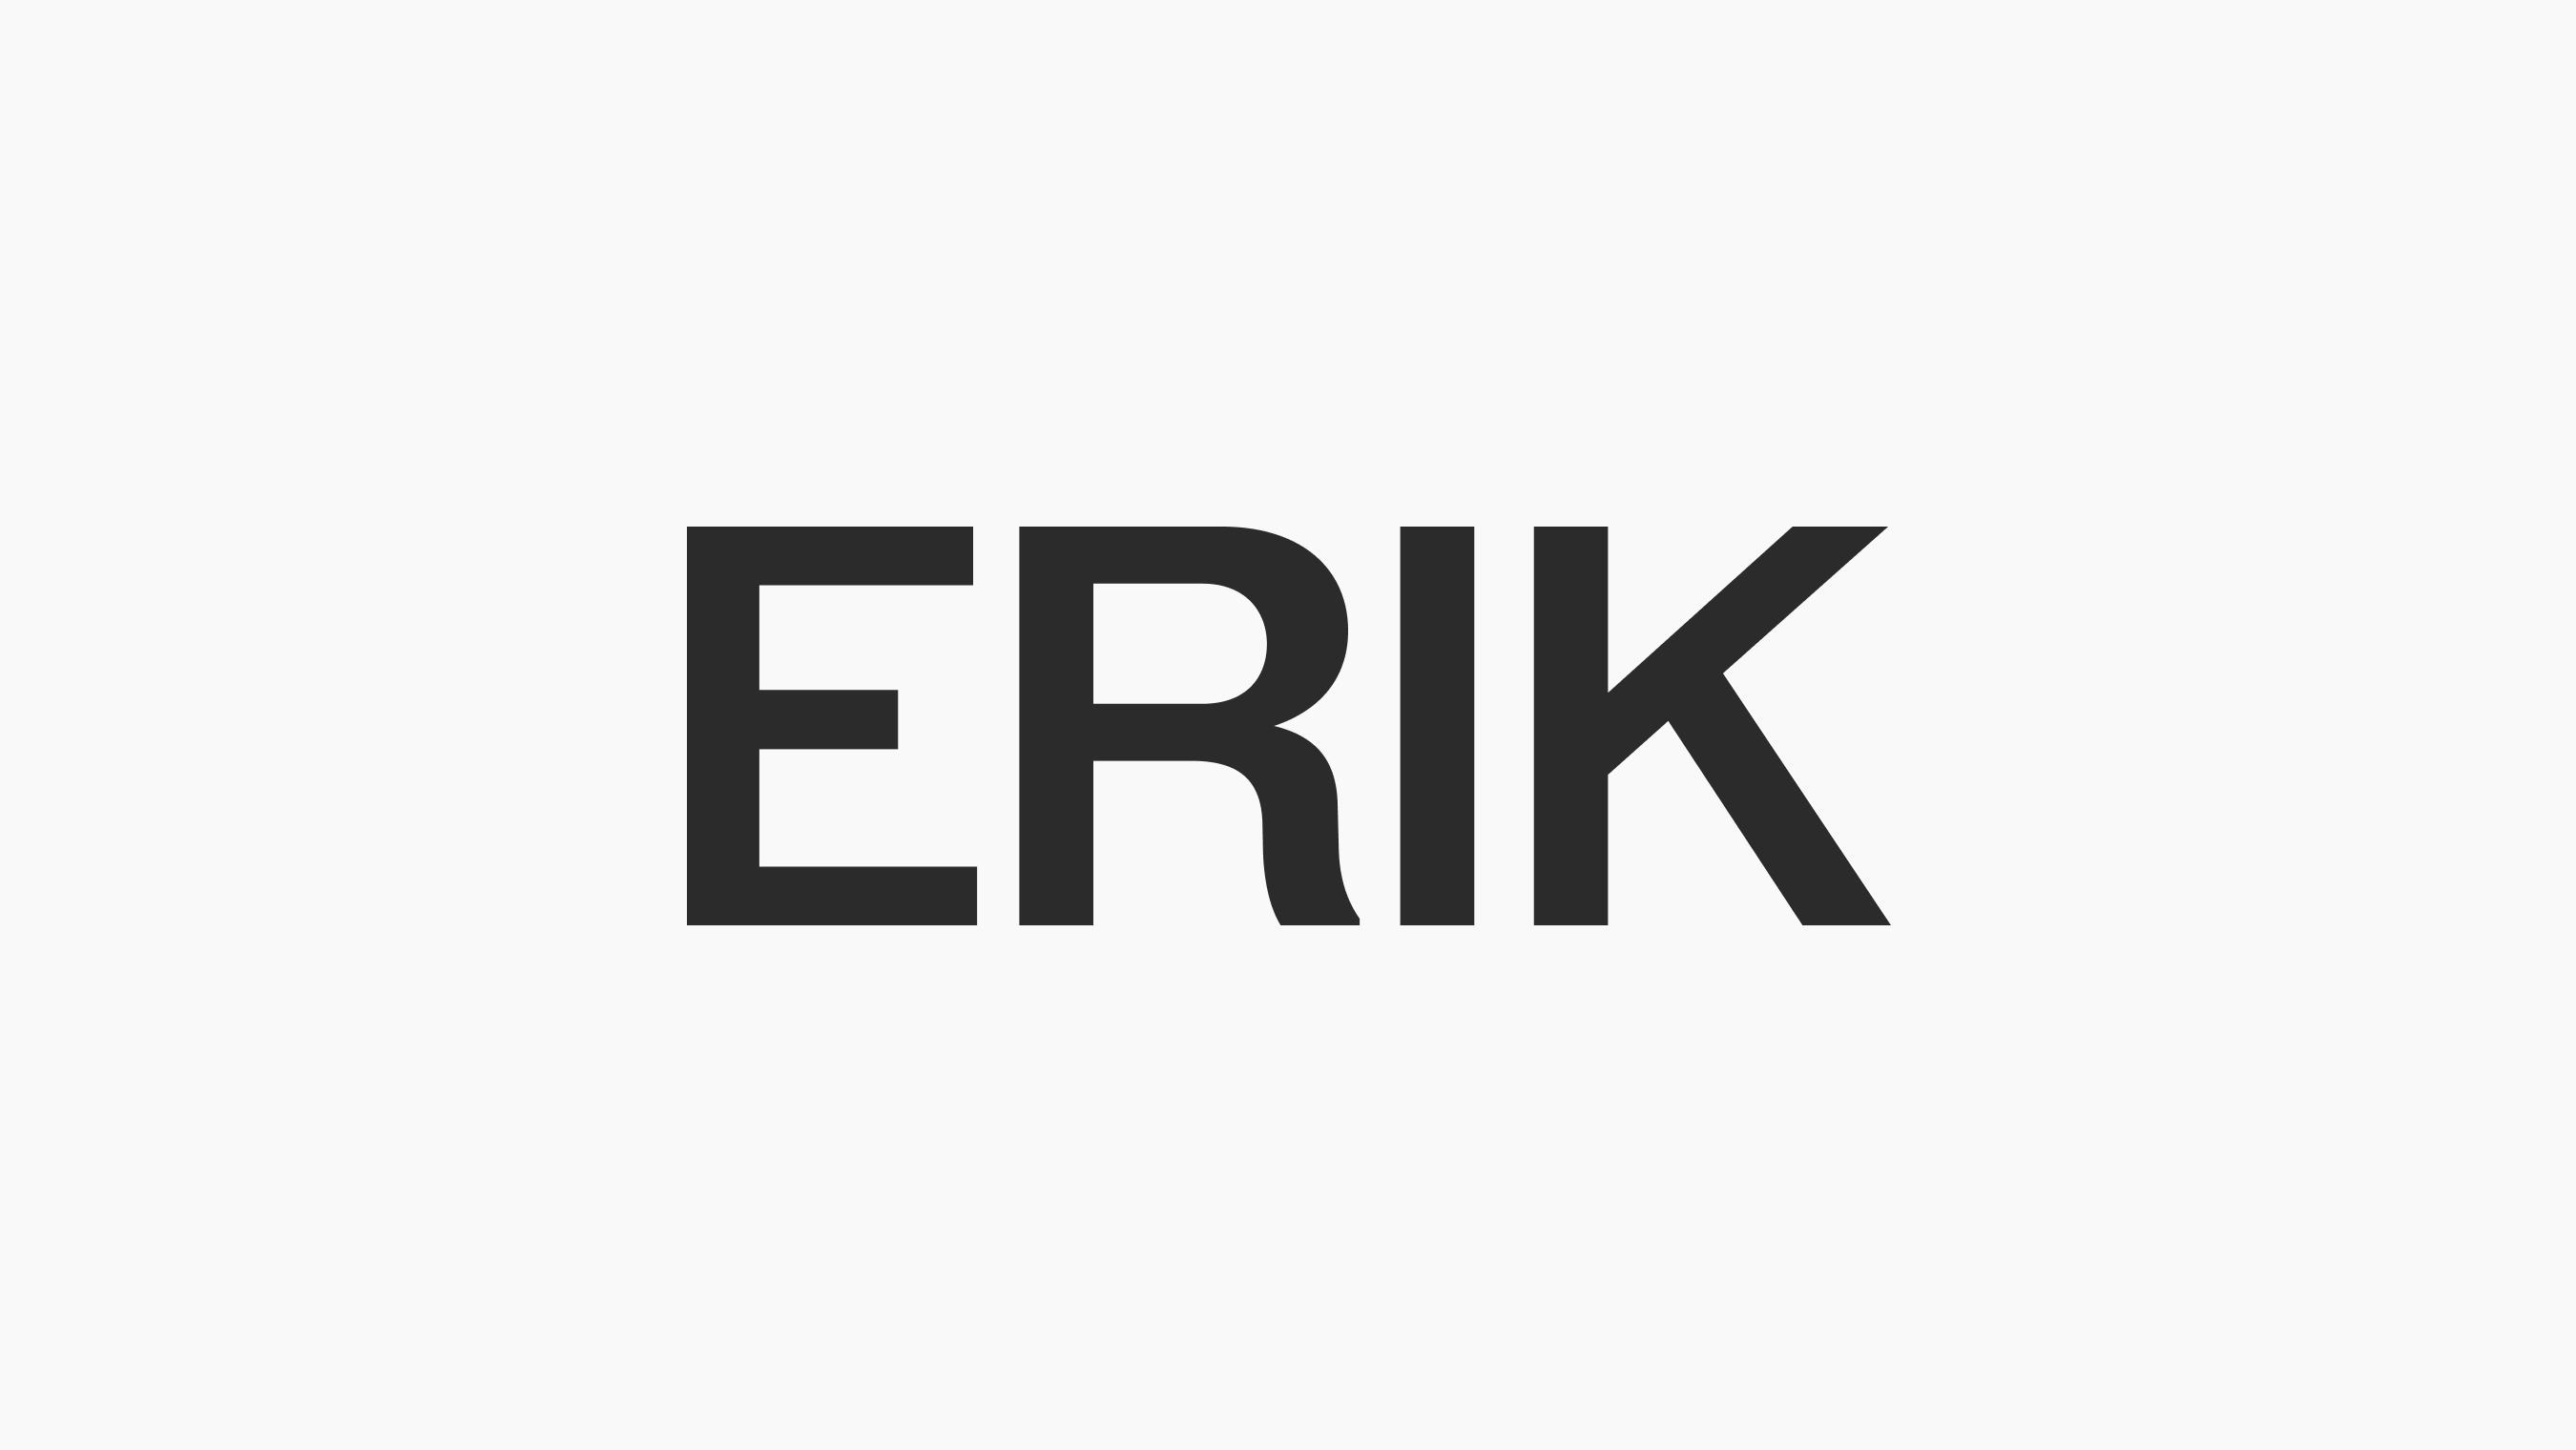 erik_brand_guide_logo_01